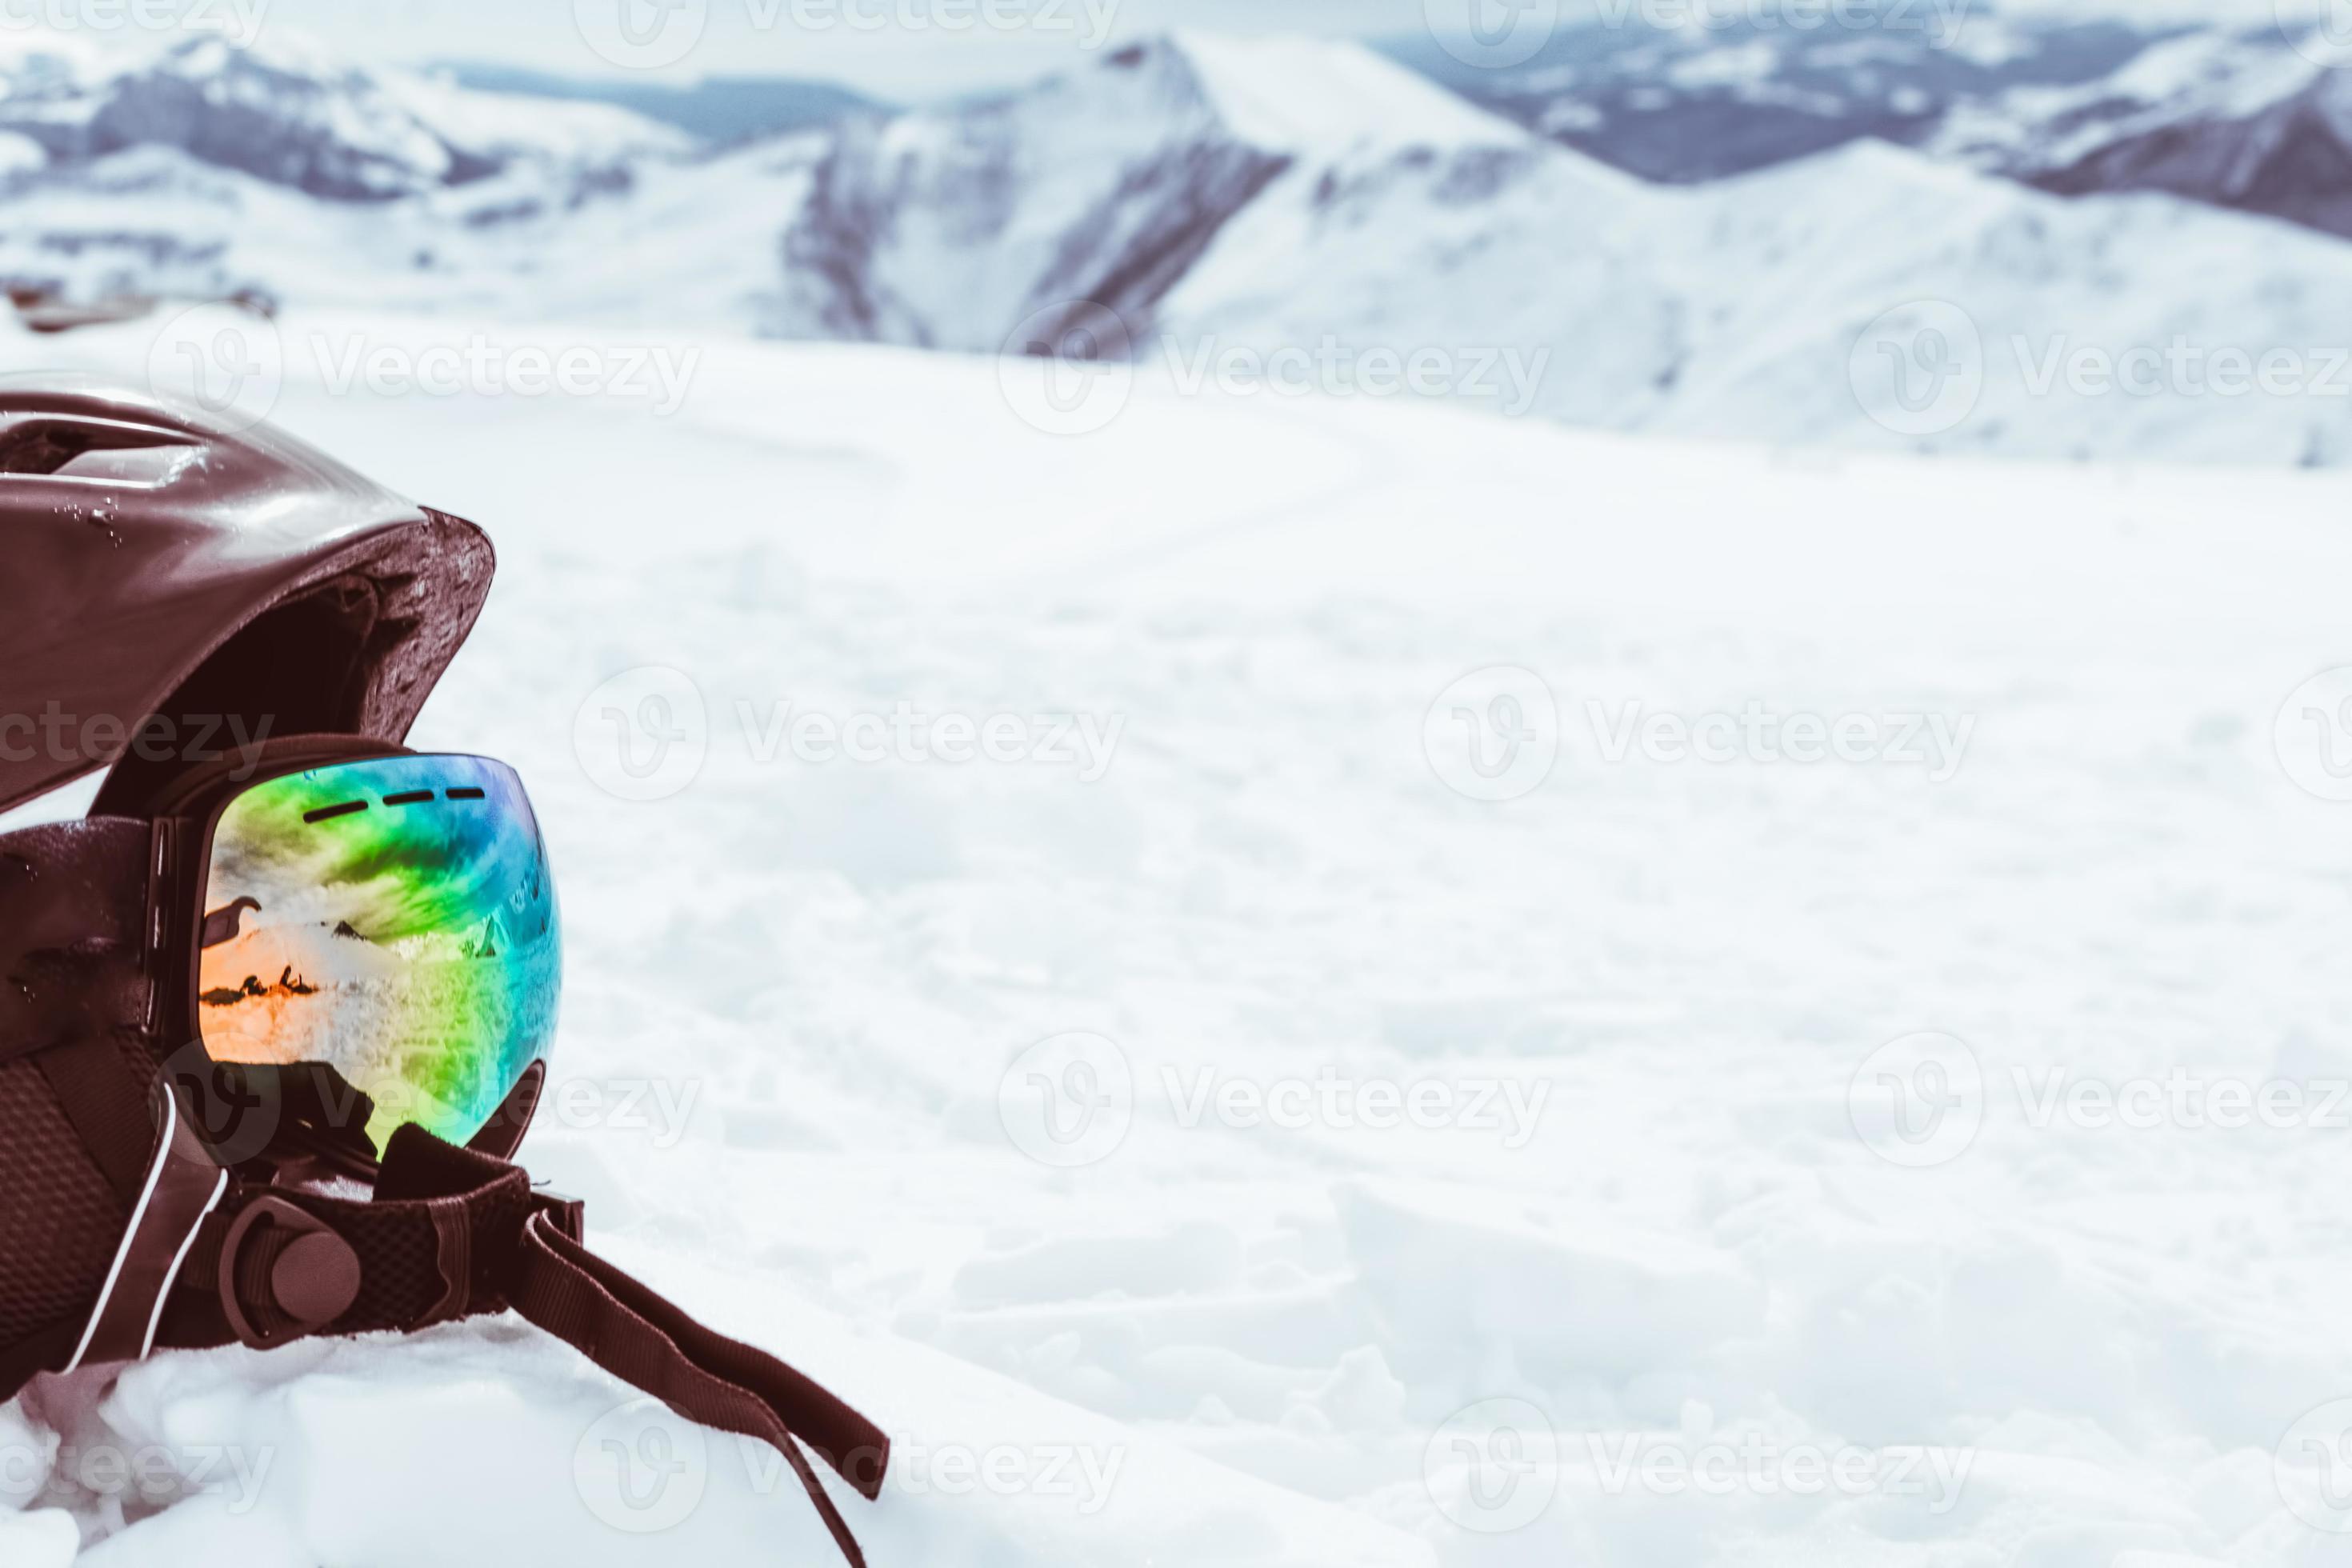 zwarte helm met skibril op sneeuw met witte besneeuwde bergen landschap 4731385 stockfoto bij